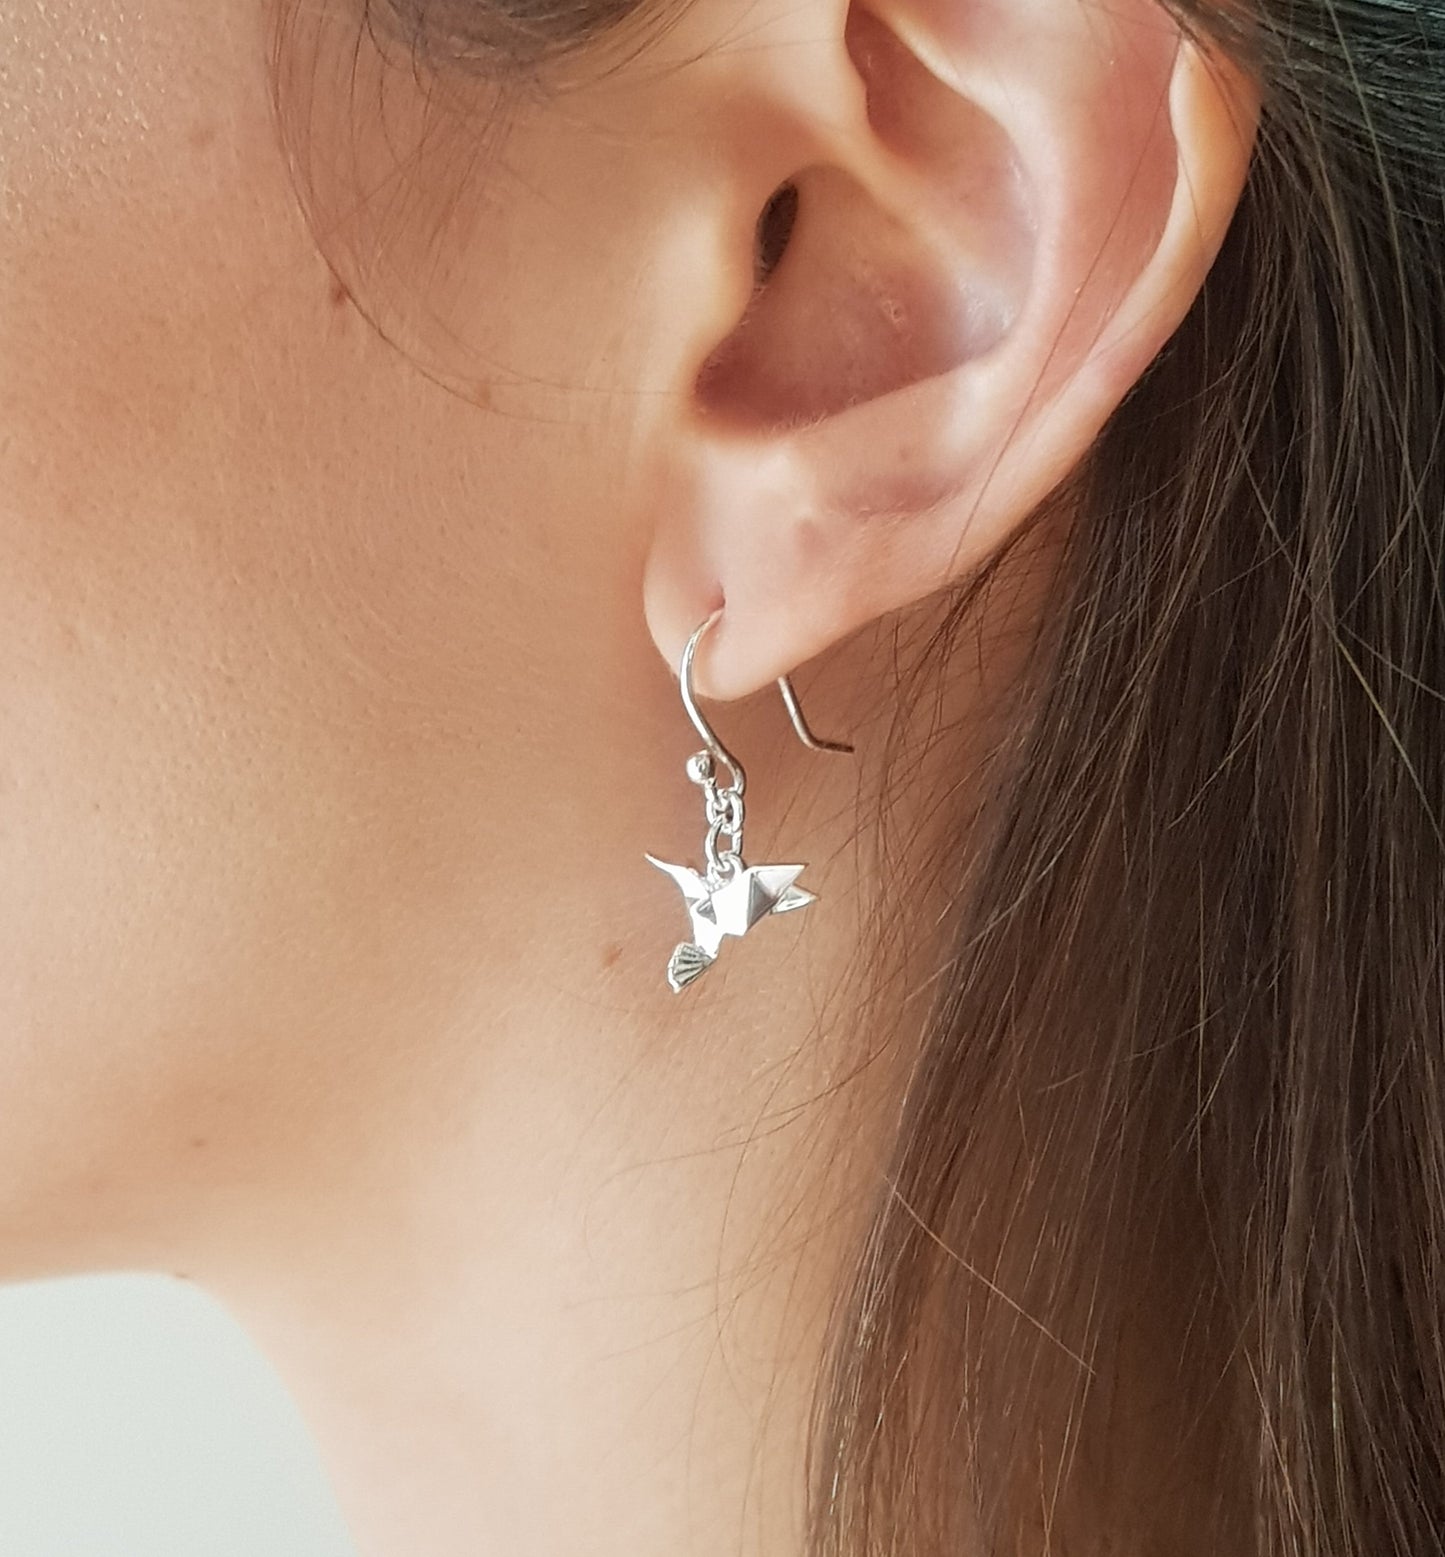 Aretes colibri de plata en una orega, ejemplo de uso.